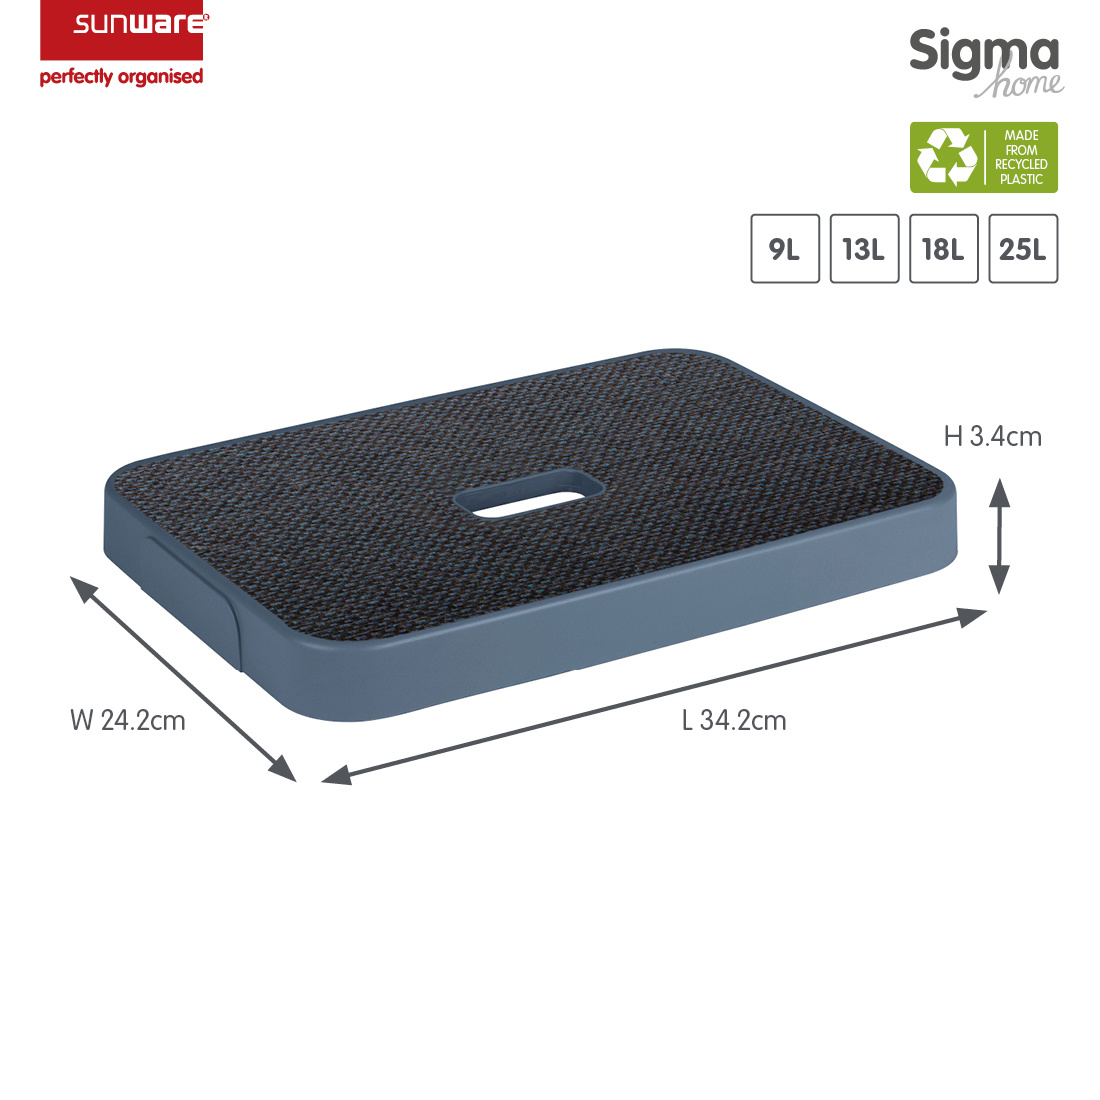 Sigma home couvercle tissu bleu foncé - boîte de rangement 9L, 13L, 18L et 25L 